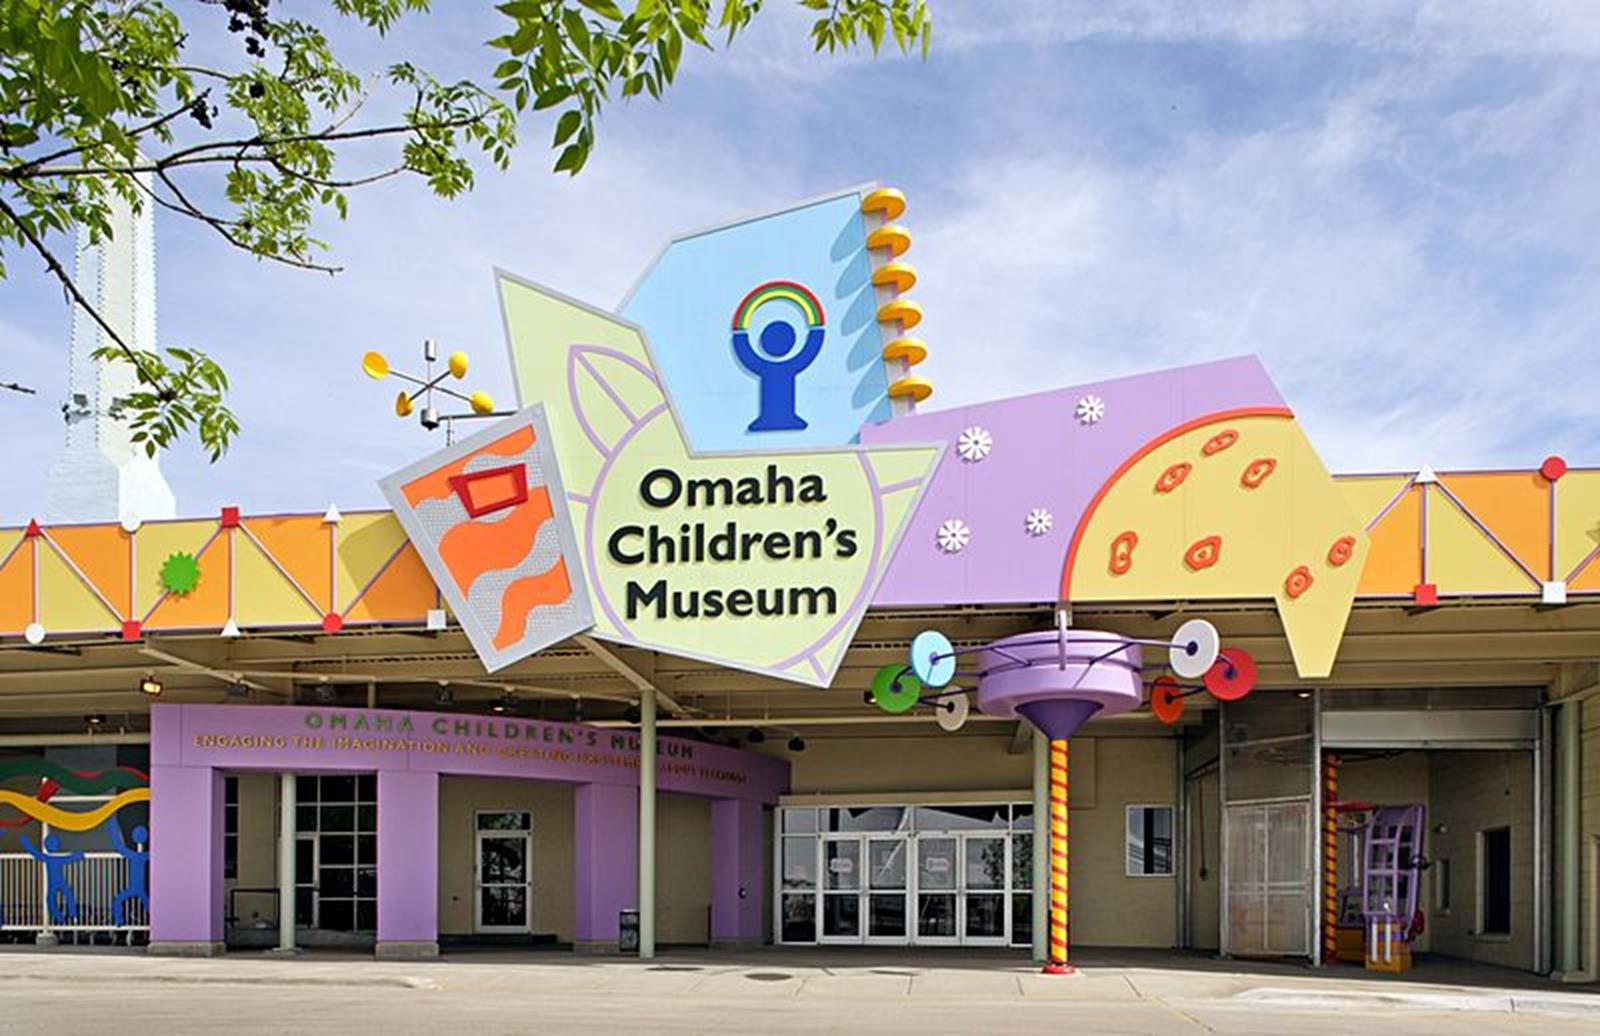 Omaha Children’s Museum